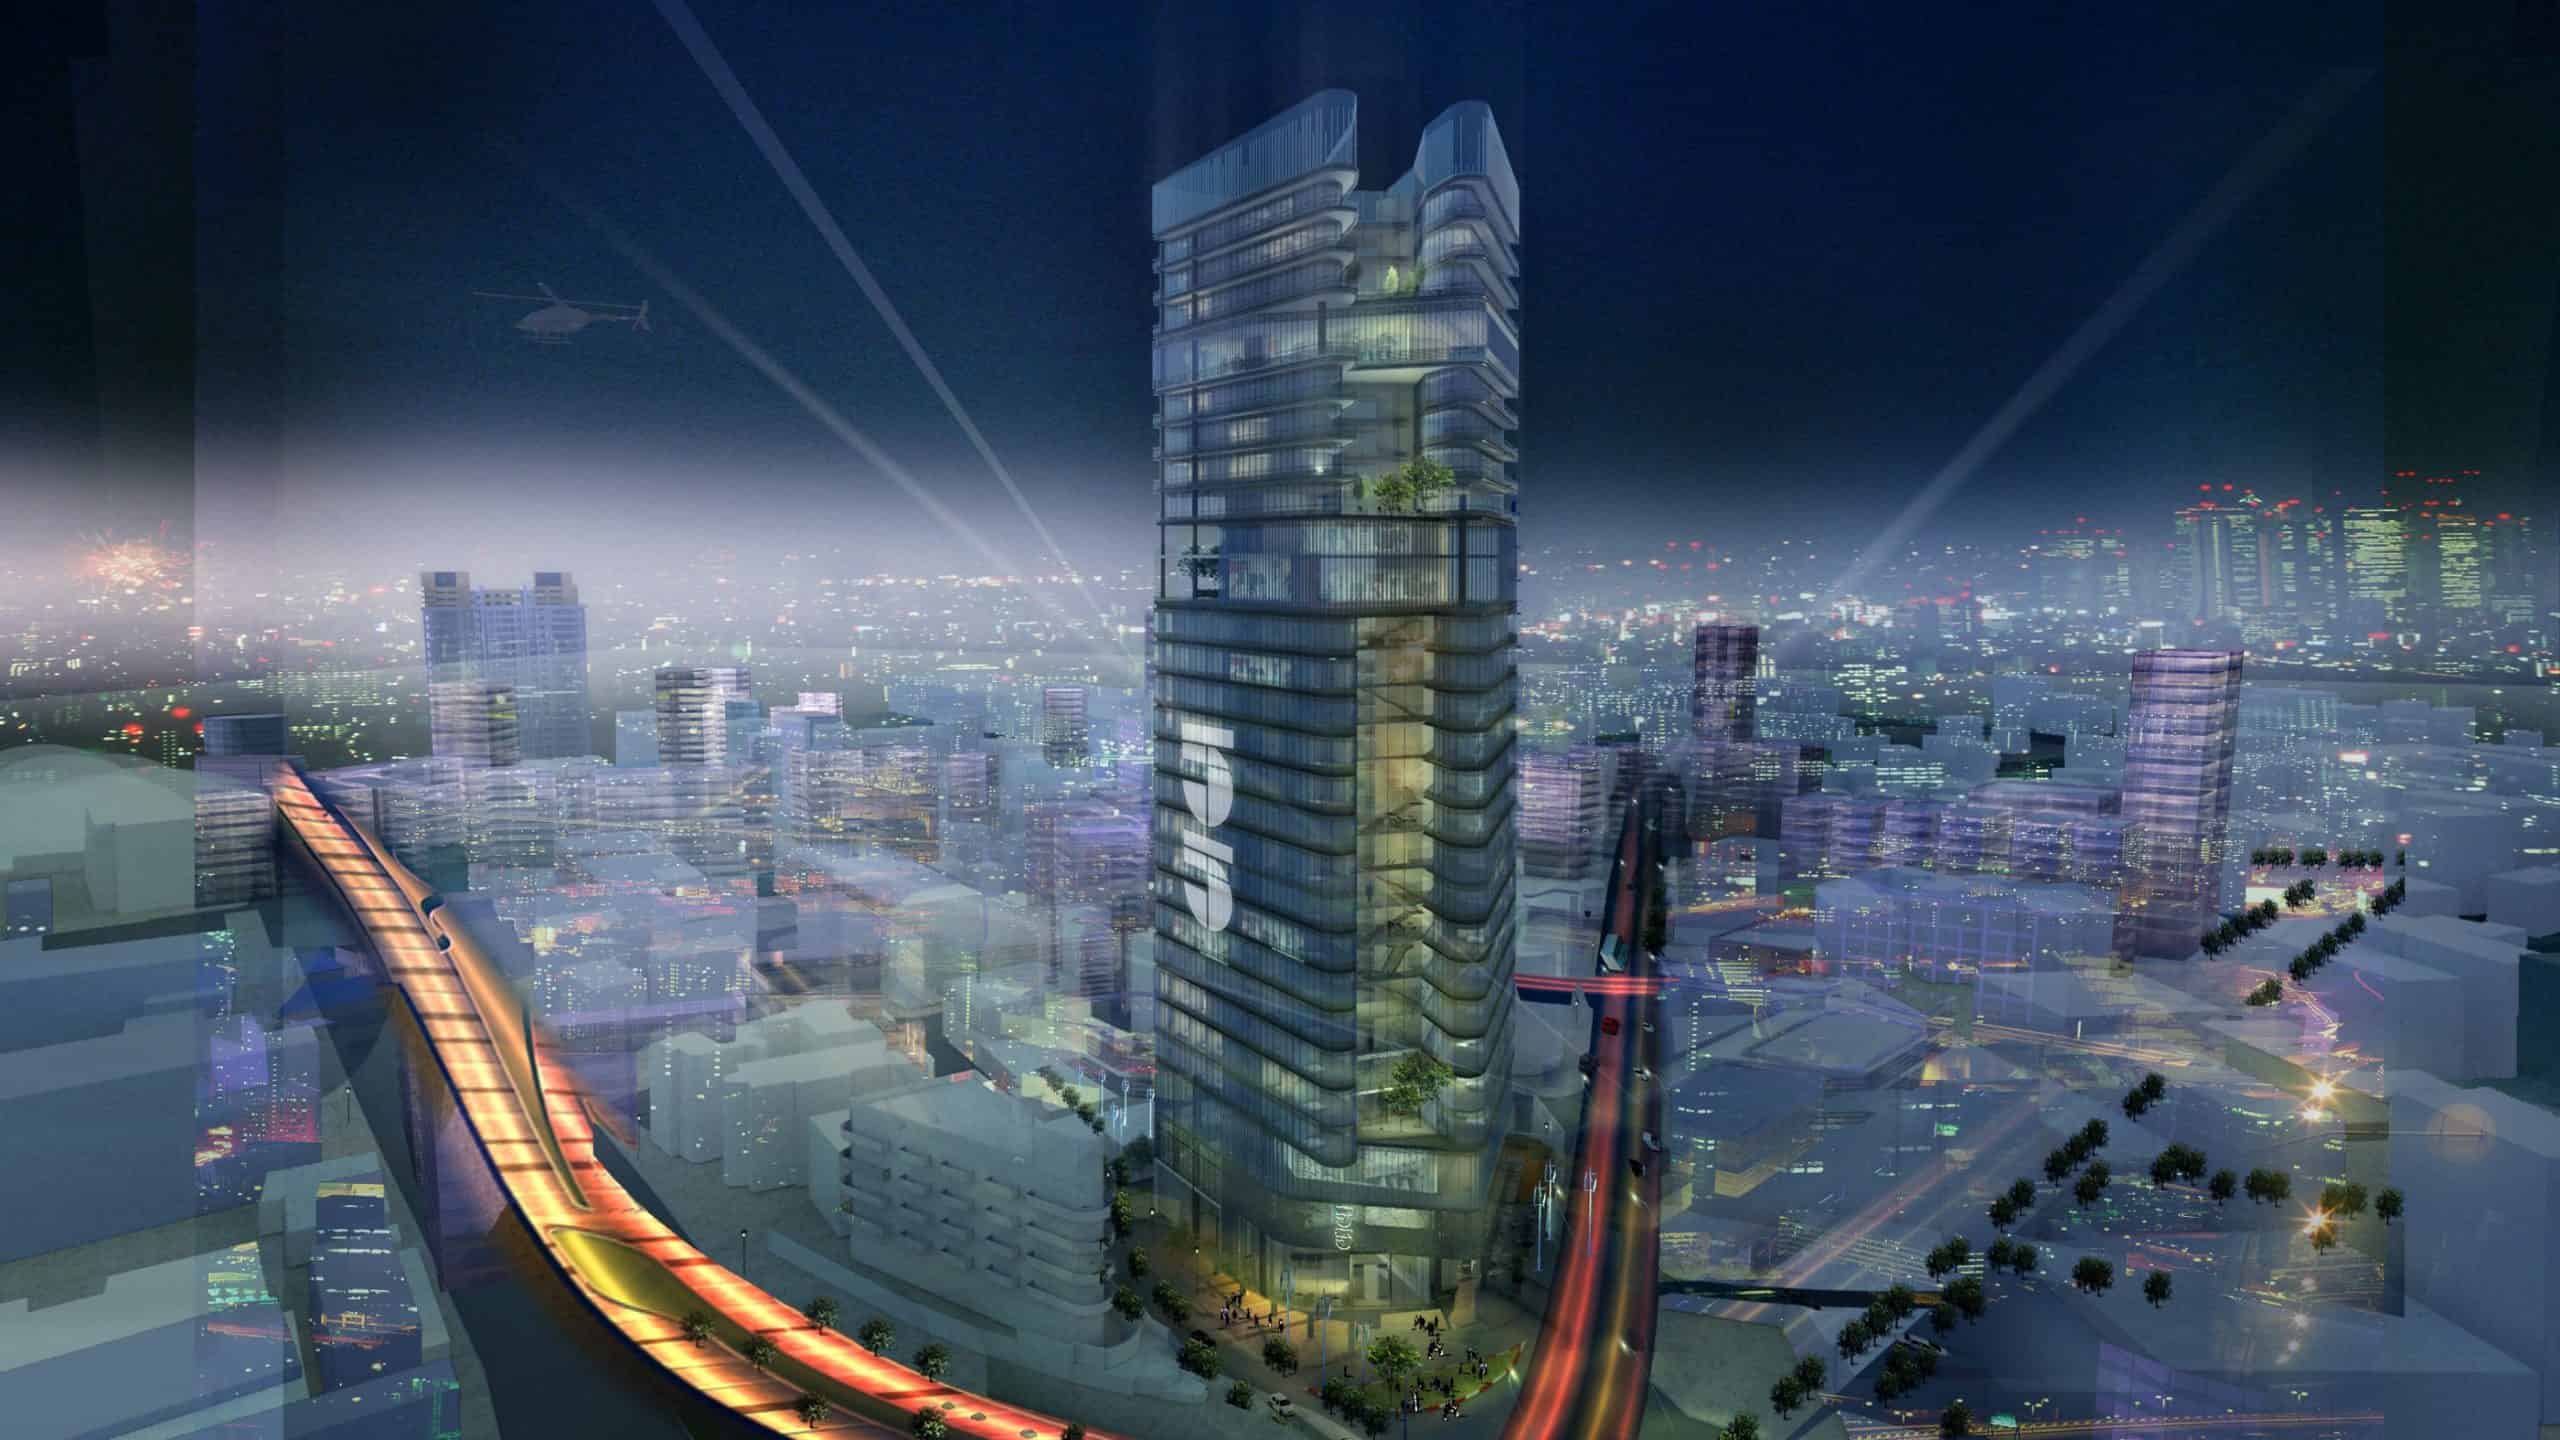 בתמונה - הדמיית הפרויקט עבור מגדל "לבנדה" בתל אביב